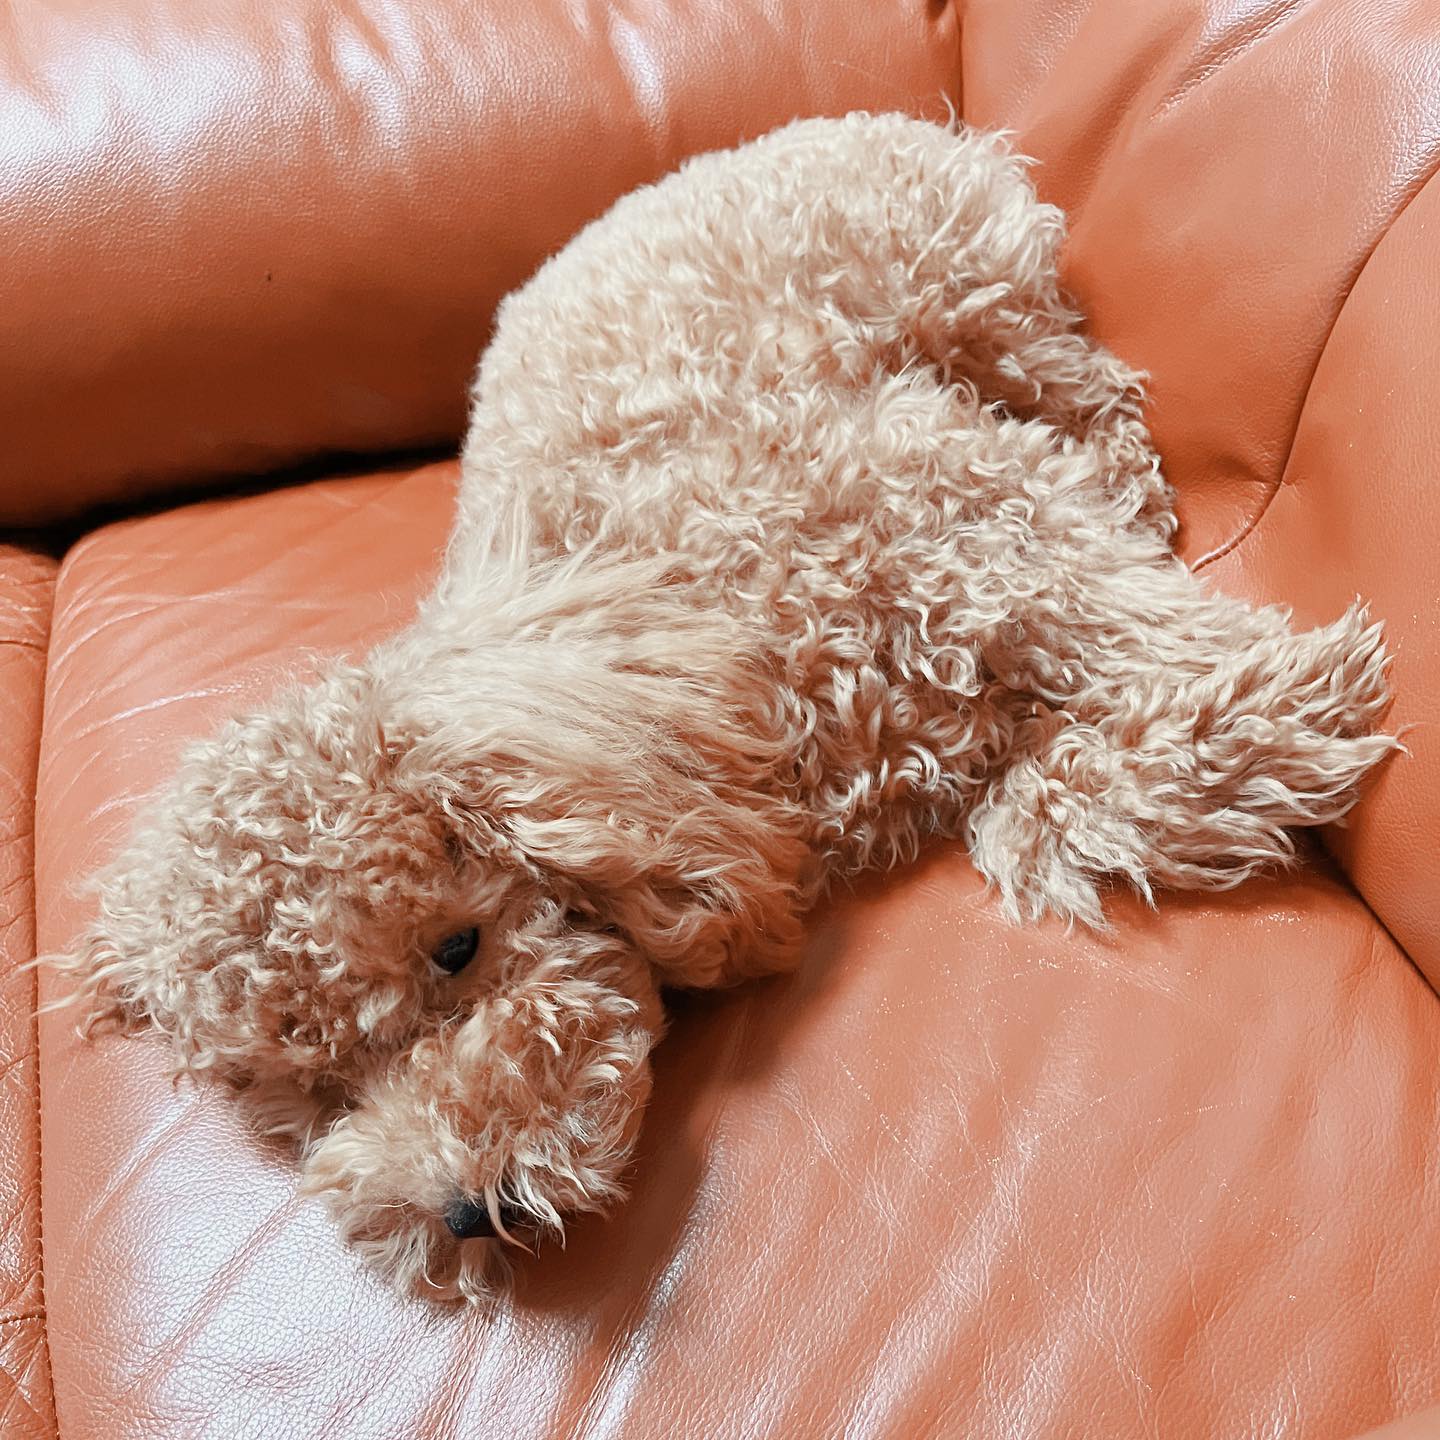 ねむねむシナモンさん#トイプードル #トイプードル男の子 #トイプードルのいる暮らし #犬のいる暮らし #ねむねむ犬 #眠たい犬